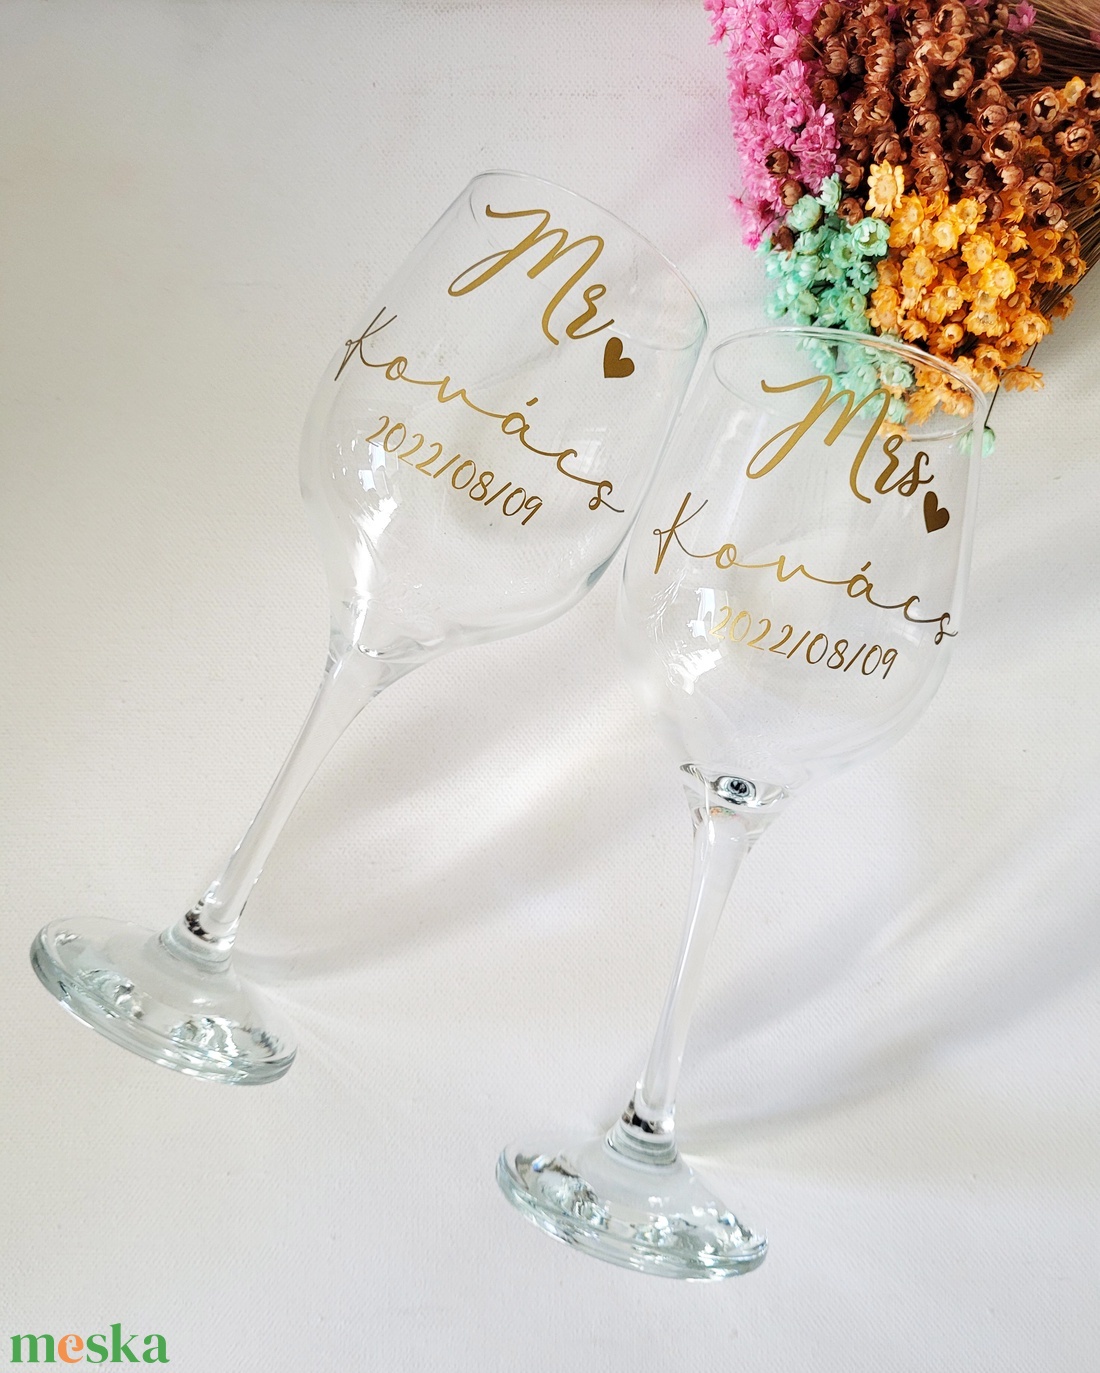 esküvői pohár szett, Mr és Mrs, névvel feliratozva, nászajándék - esküvő - emlék & ajándék - nászajándék - esküvői pohár, pohárszett - Meska.hu